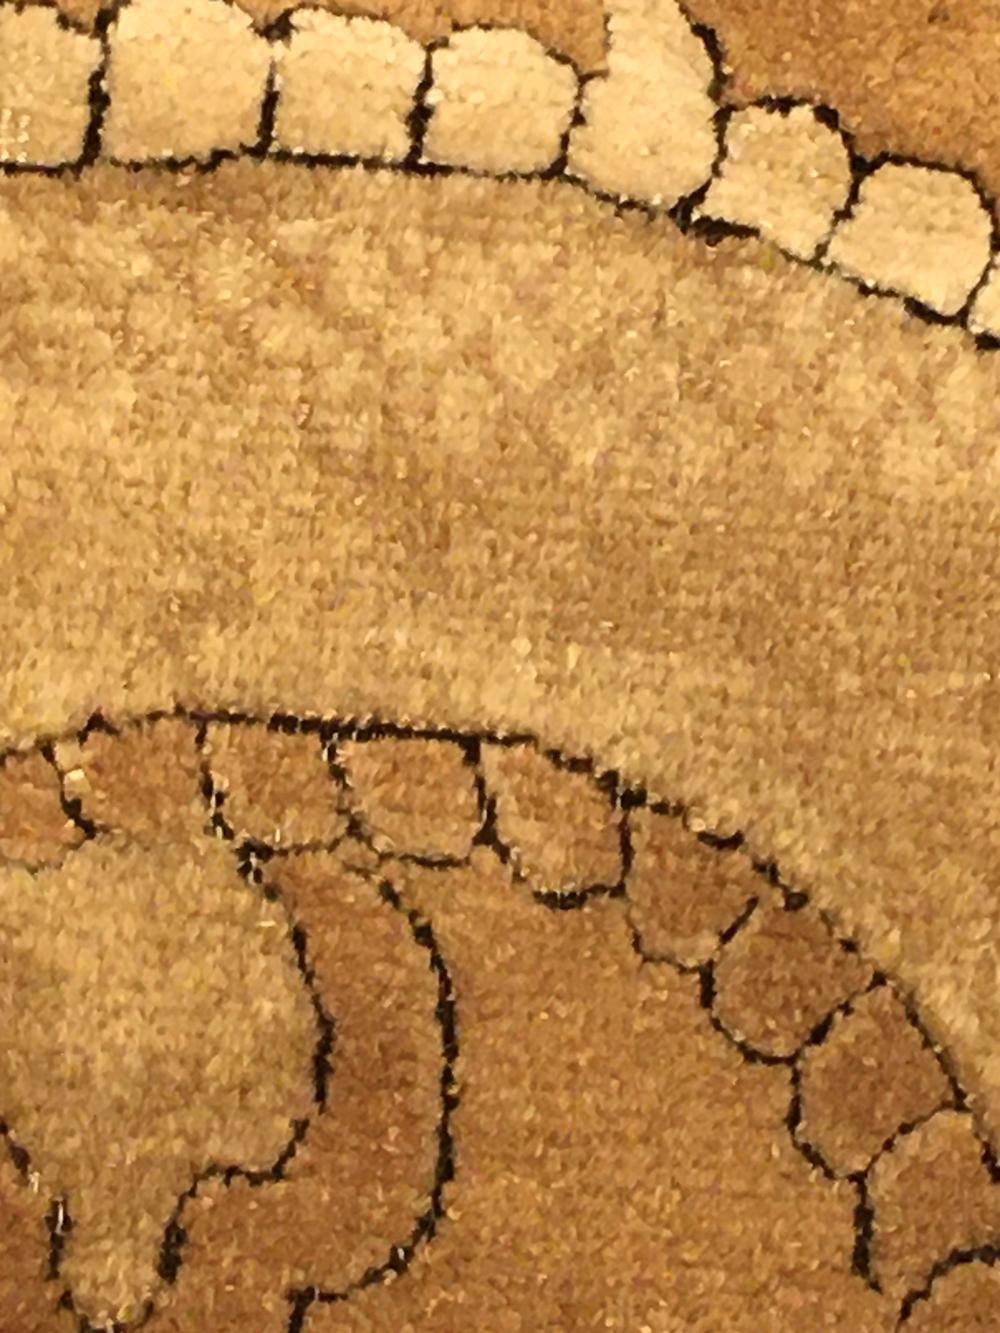 Atemberaubende und hoch Collectal Antike 16. Jahrhundert Ming-Dynastie Drache Chinese Fragment, Herkunftsland: China, Circa-Datum: 16. Jahrhundert. Größe: 0,91 m x 0,91 m (3 ft x 3 ft)

